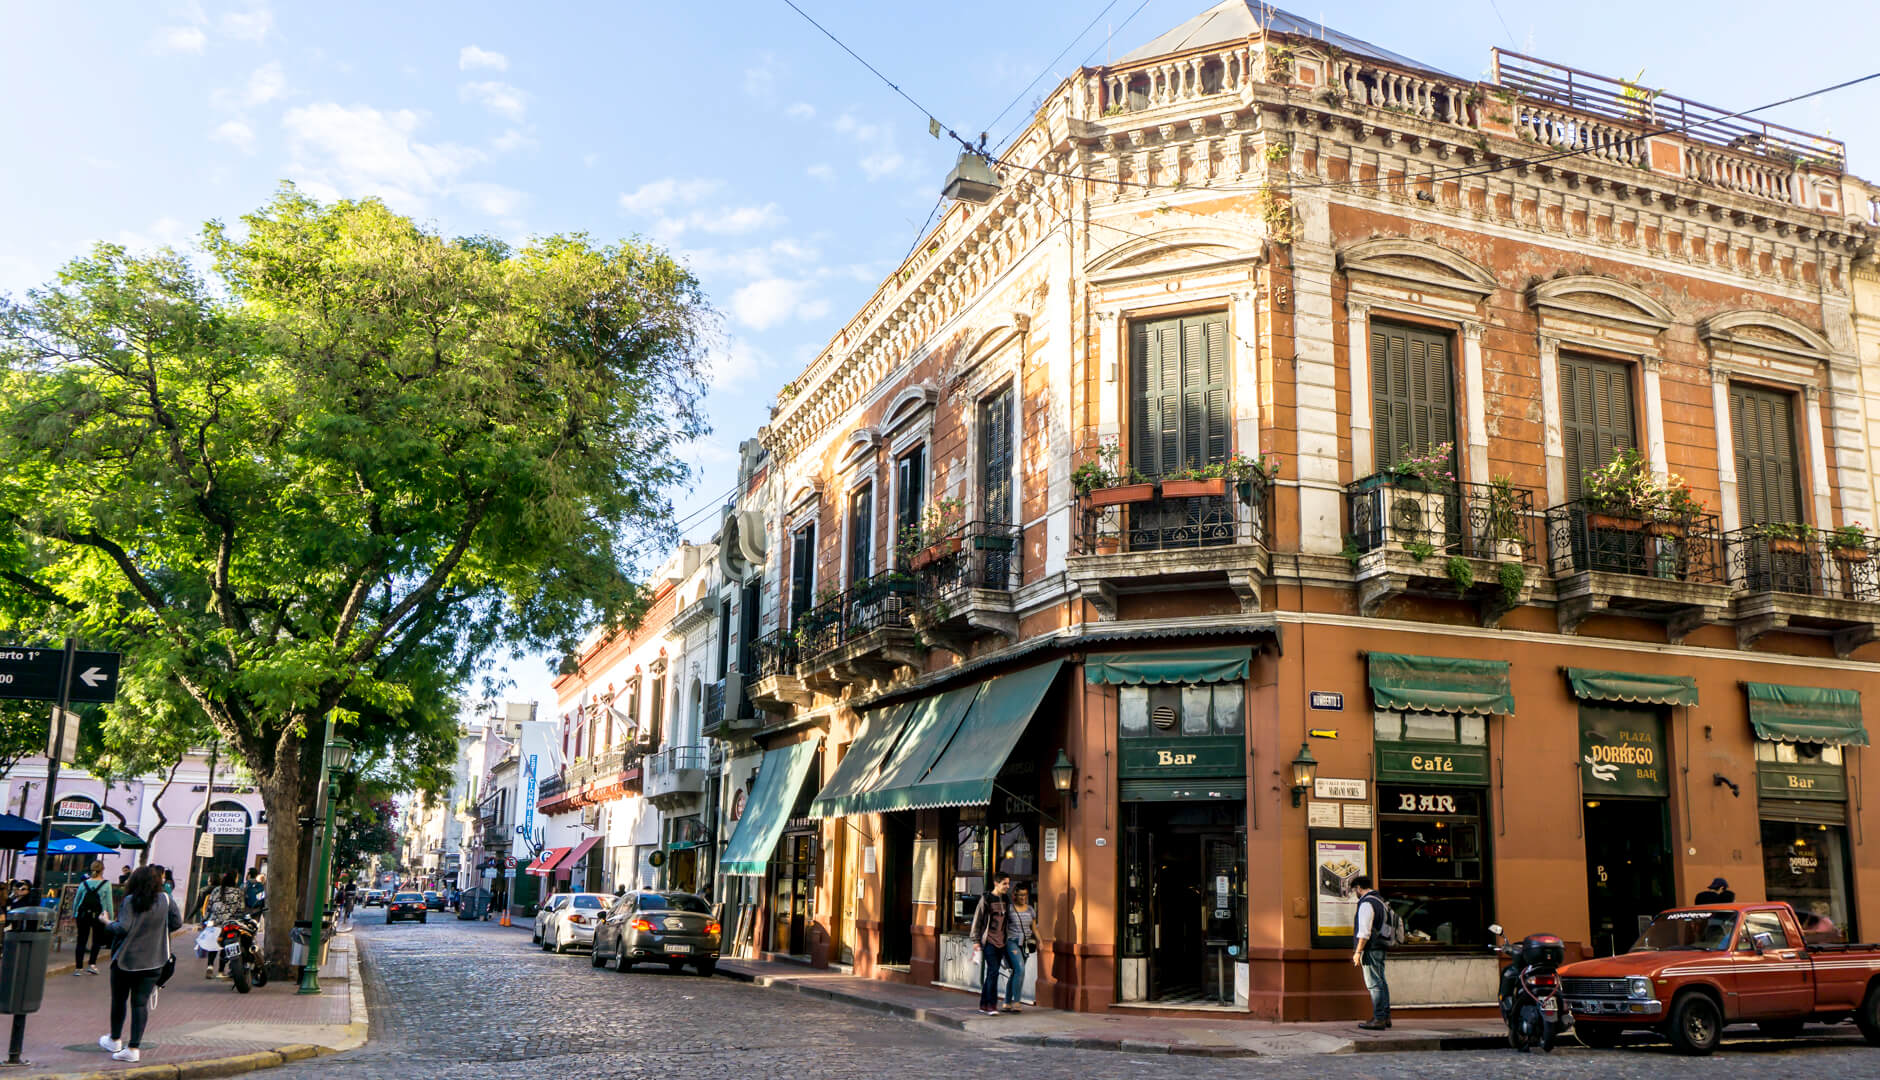 Thành phố xinh đẹp Buenos Aires được xem là “kinh đô sách của thế giới”, nơi có tỷ lệ hiệu sách trên đầu người cao hơn bất cứ nơi nào khác. Ảnh: Flickr.